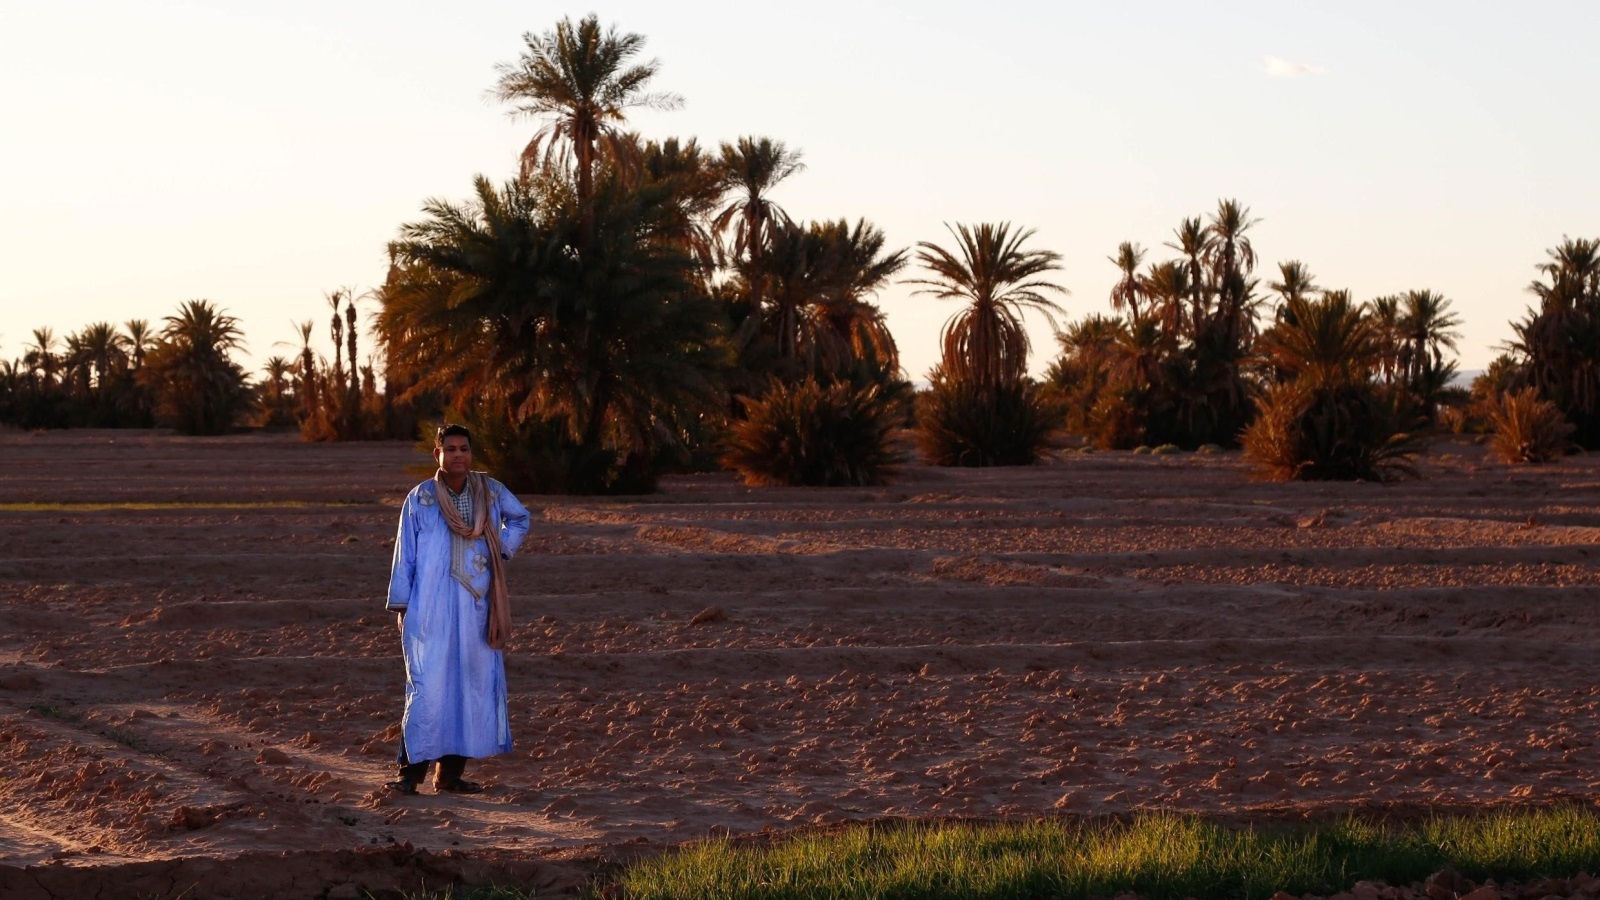 حليم صابي منسق أنشطة ثقافية في المغرب، يقف قريبا من إحدى الواحات التي تأثرت بفعل التغير المناخي (الجزيرة)